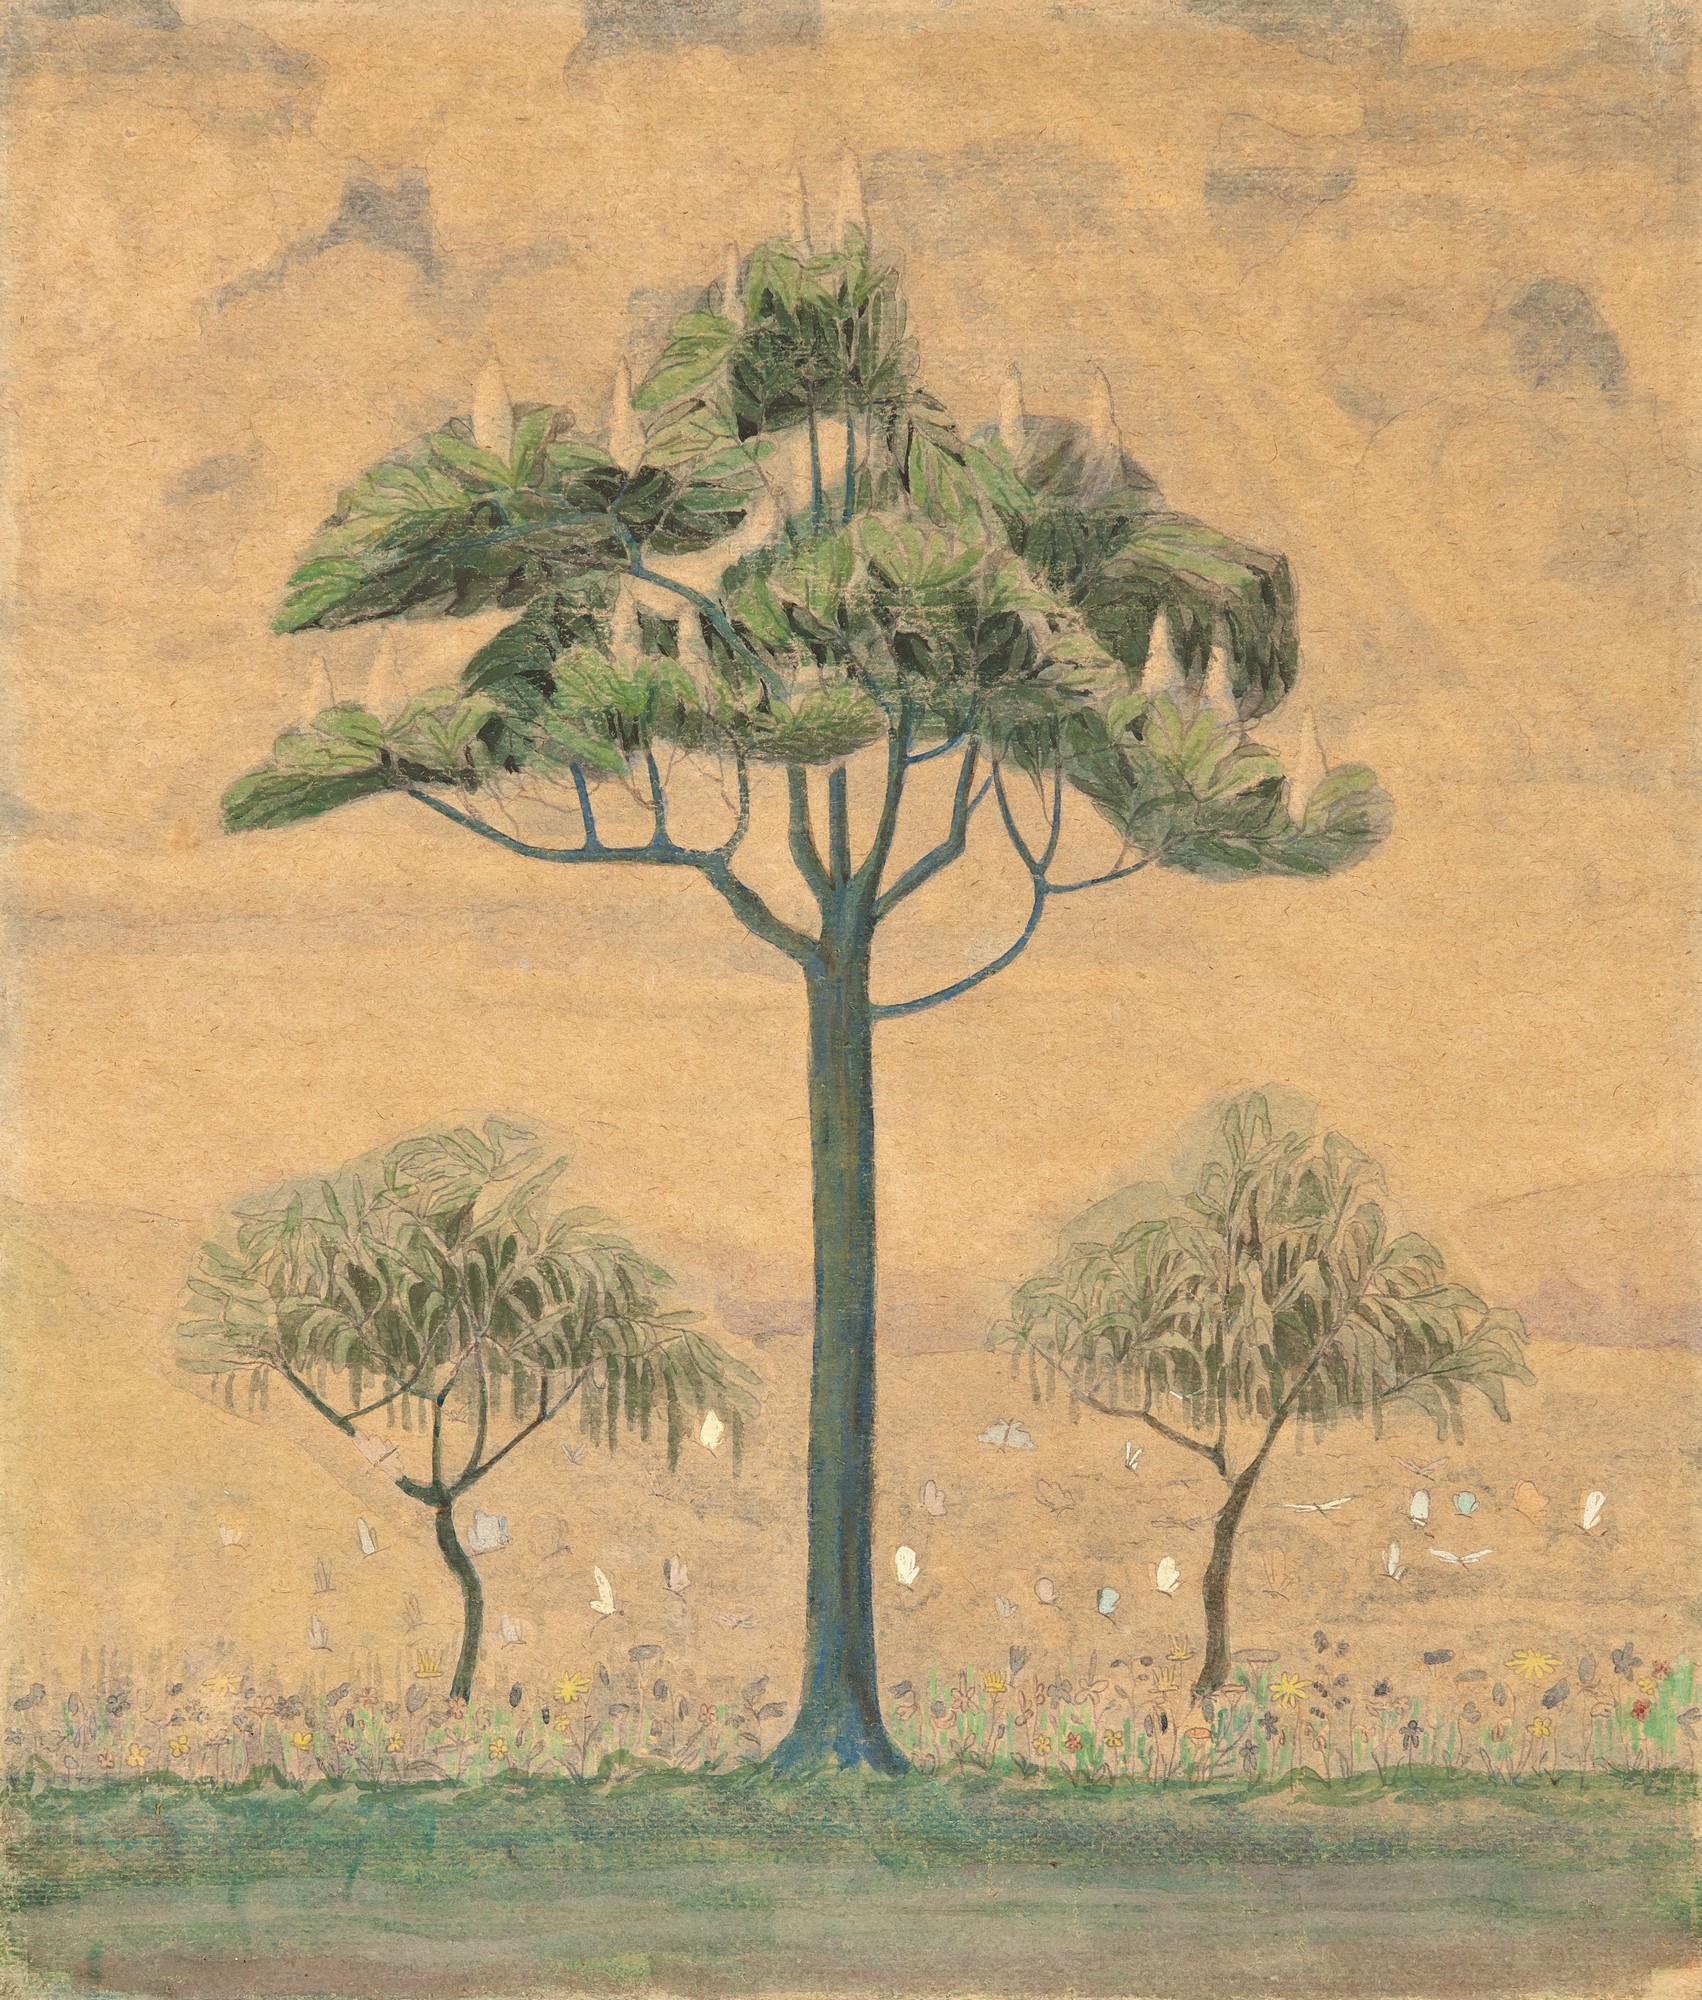 M.K. Čiurlionis, „Wiosna”,1907, zbiory Narodowego Muzeum Sztuki M.K. Čiurlionisa w Kownie (źródło: materiały prasowe)